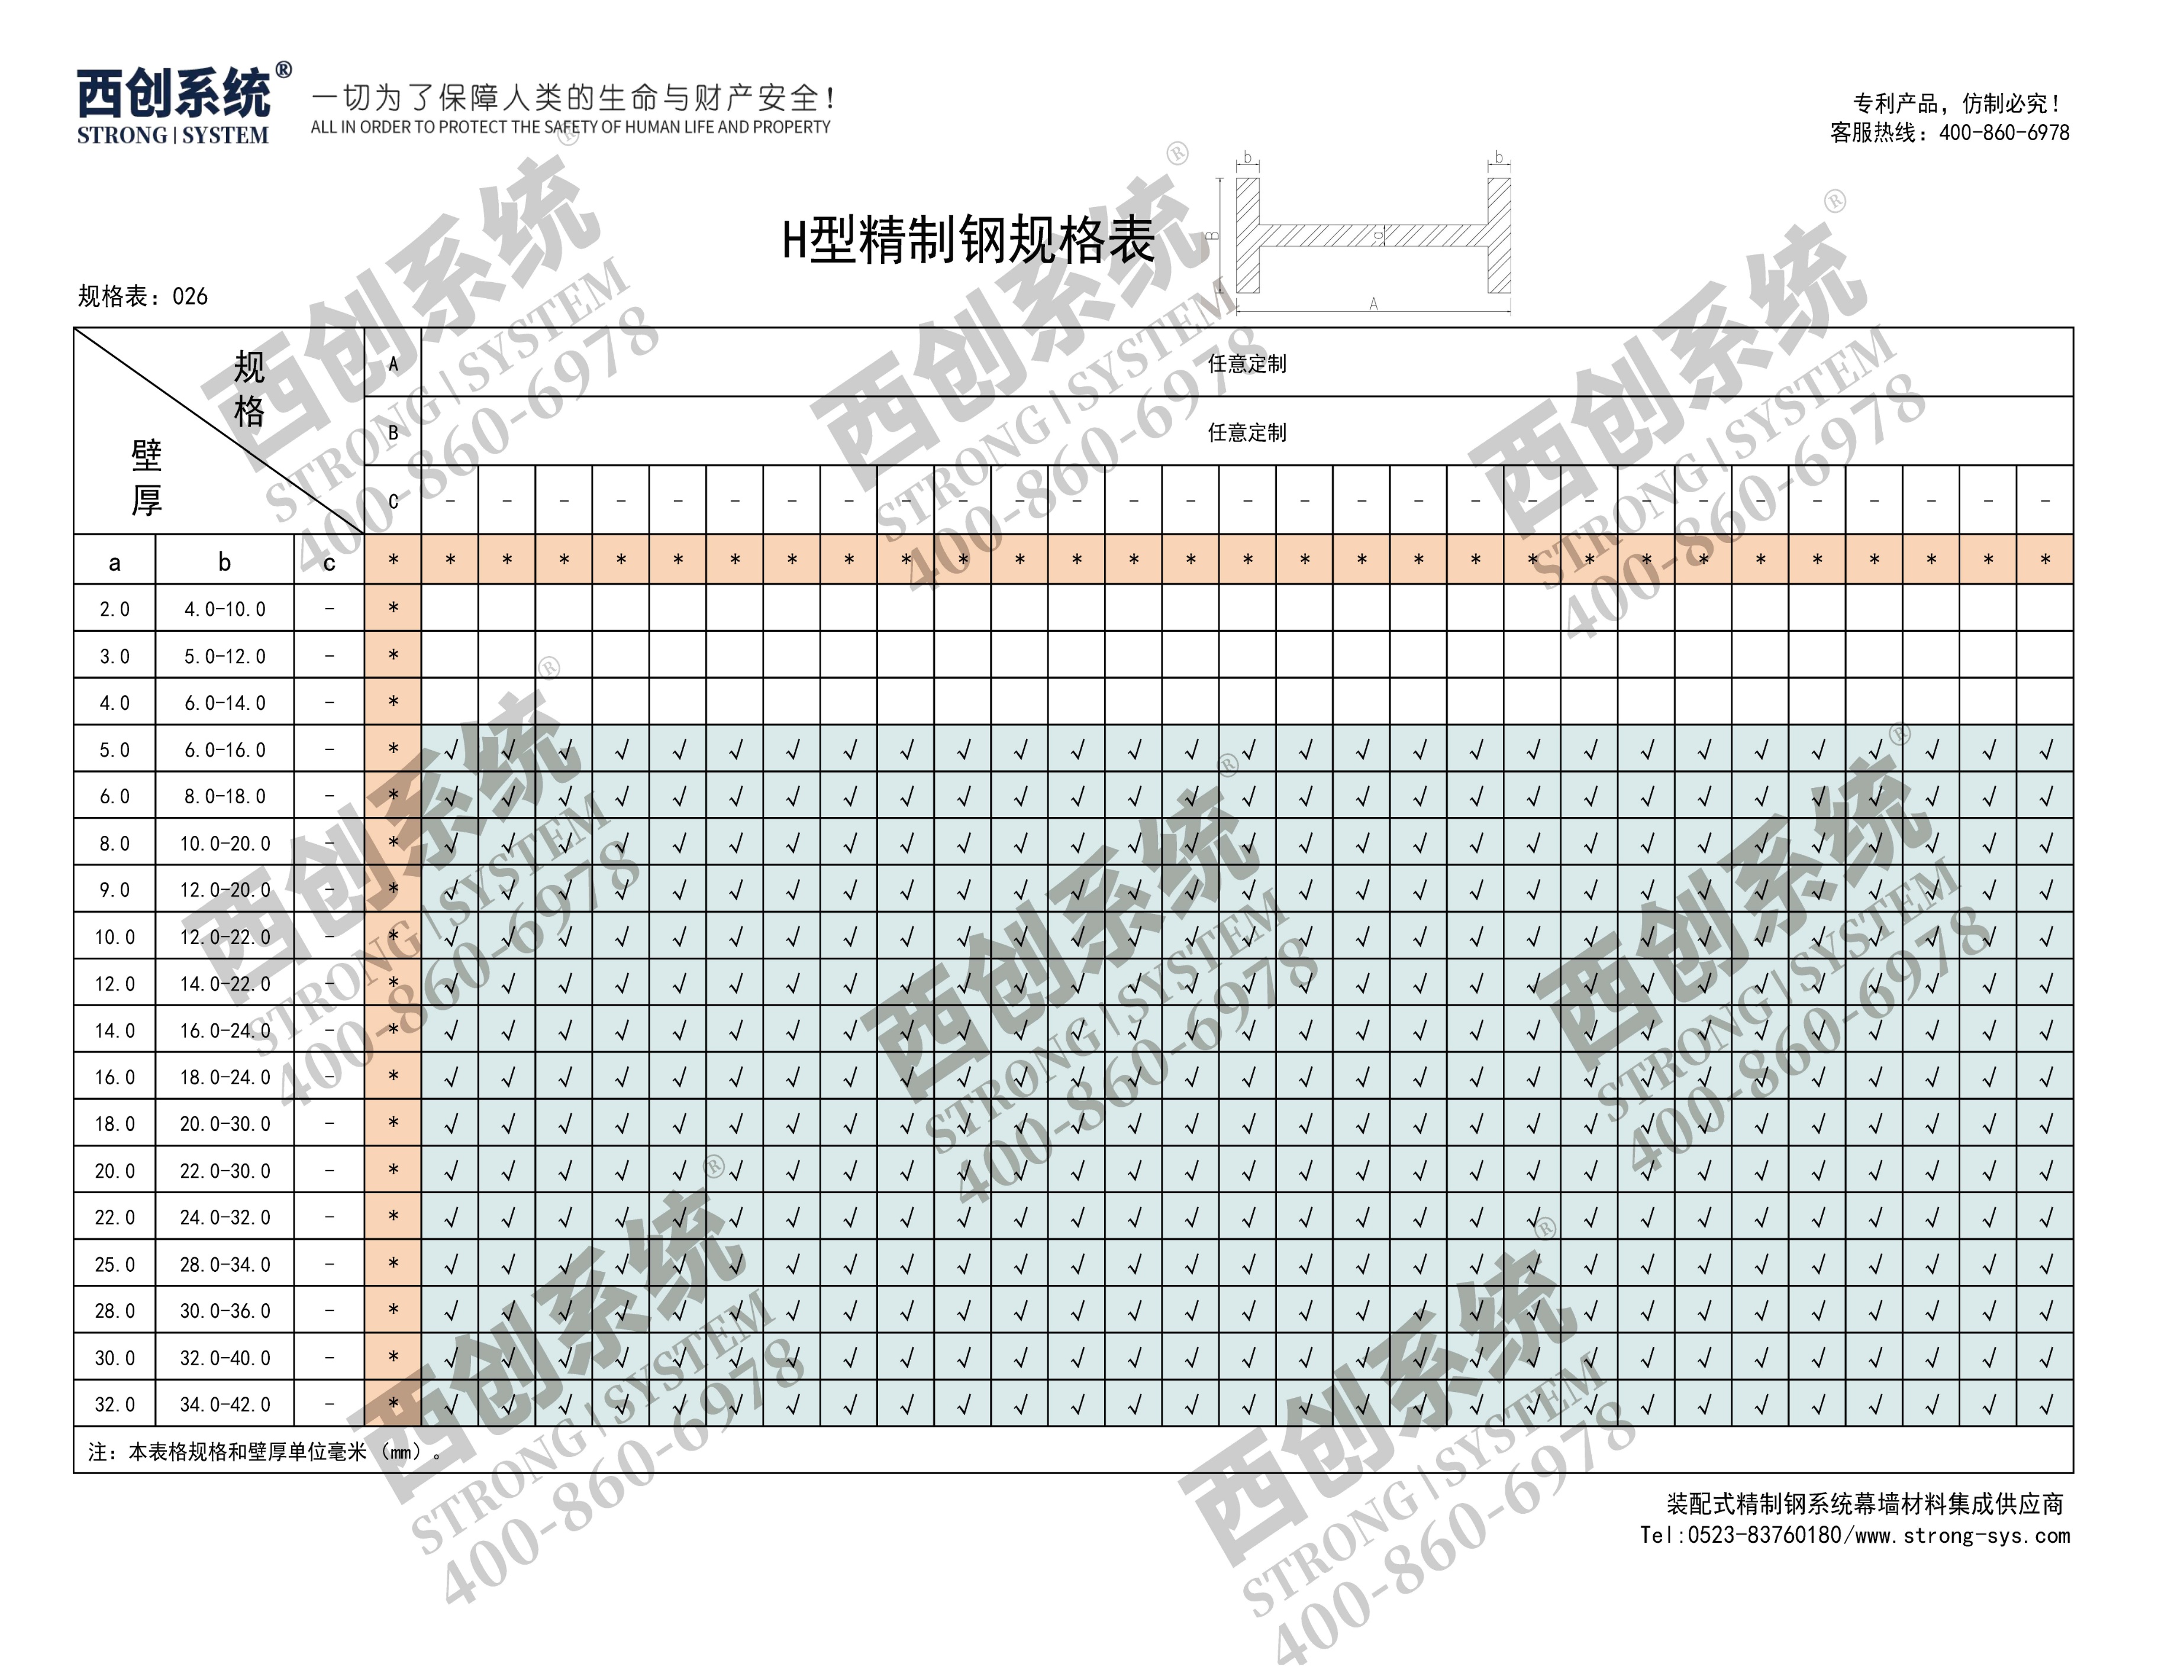 西创系统工型精制钢点式梅花夹具幕墙系统(图8)